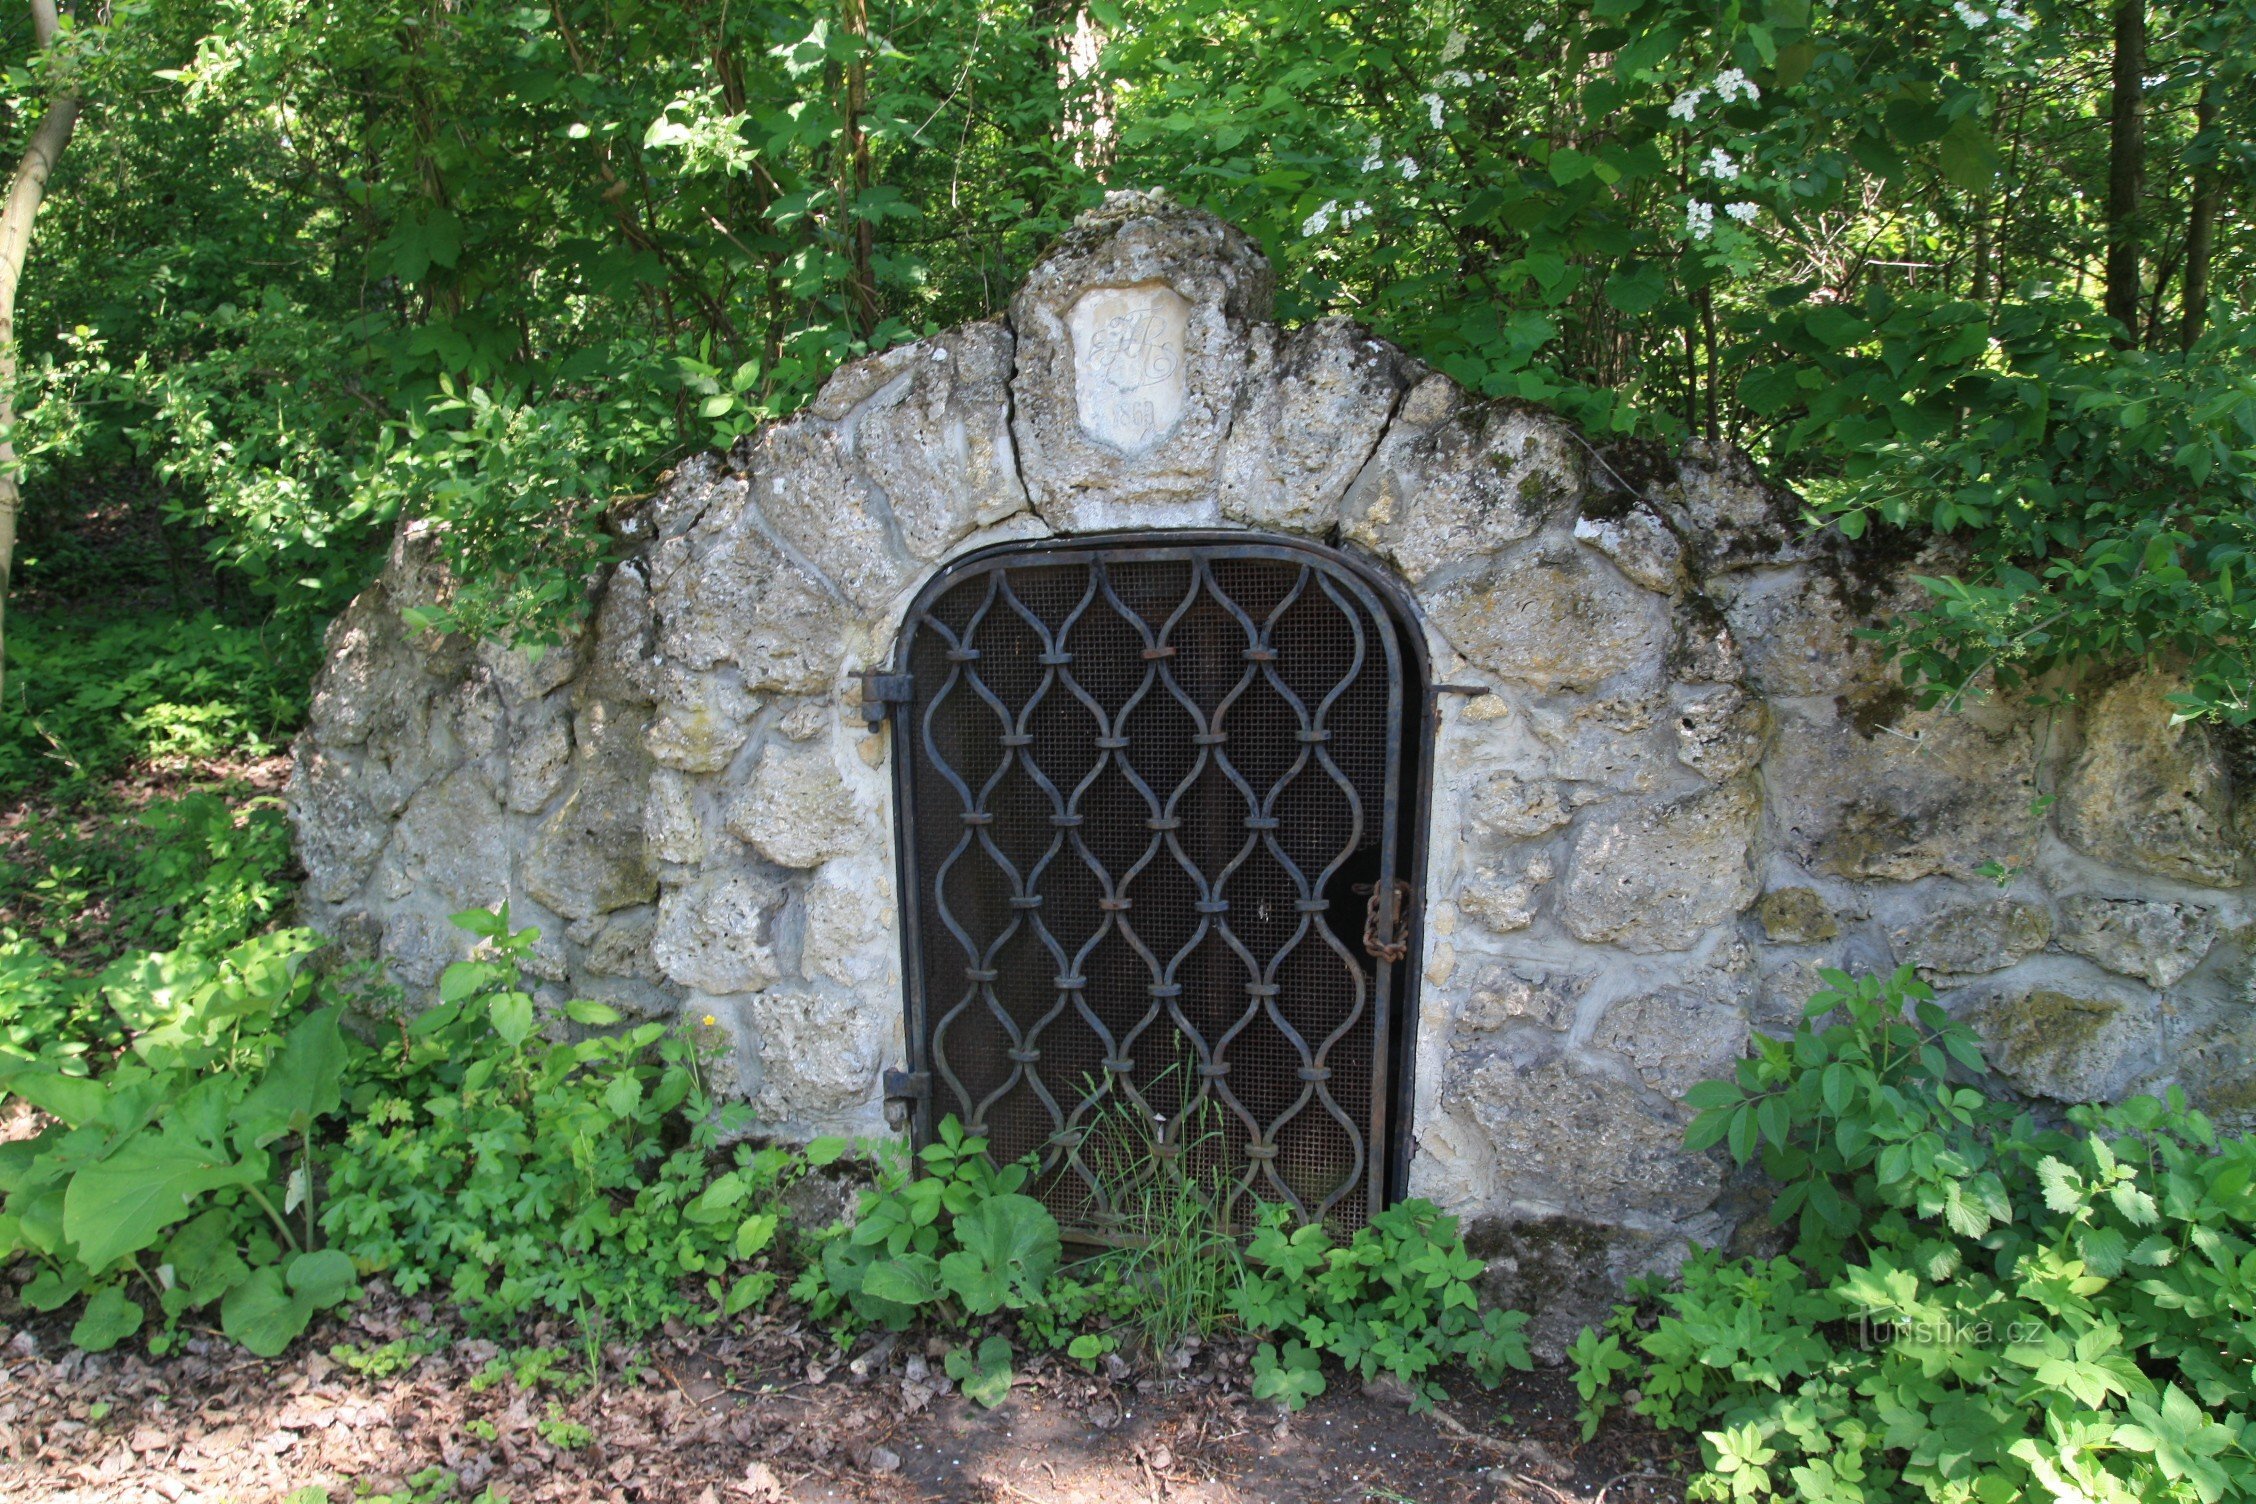 Robert's well